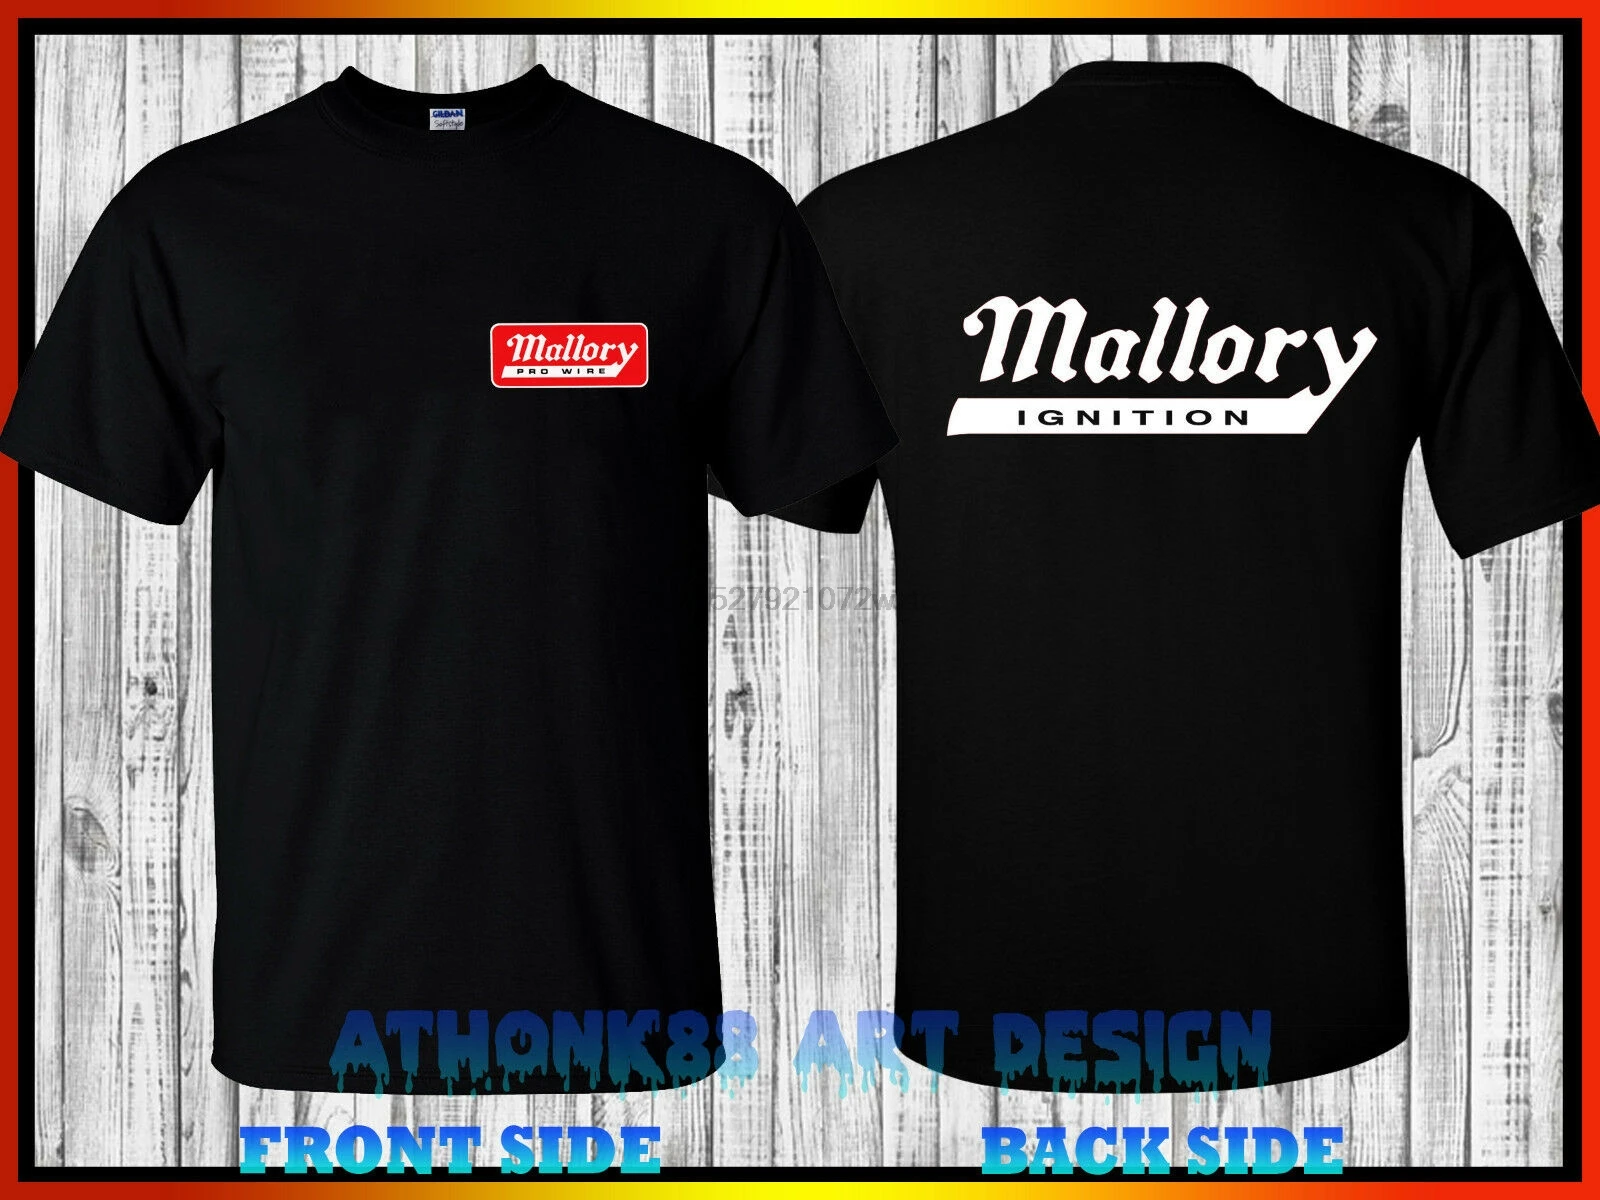 Mallory Pro Wire T-shirt Mallory Ignition Mallory Racing Equipment T-Shirt 